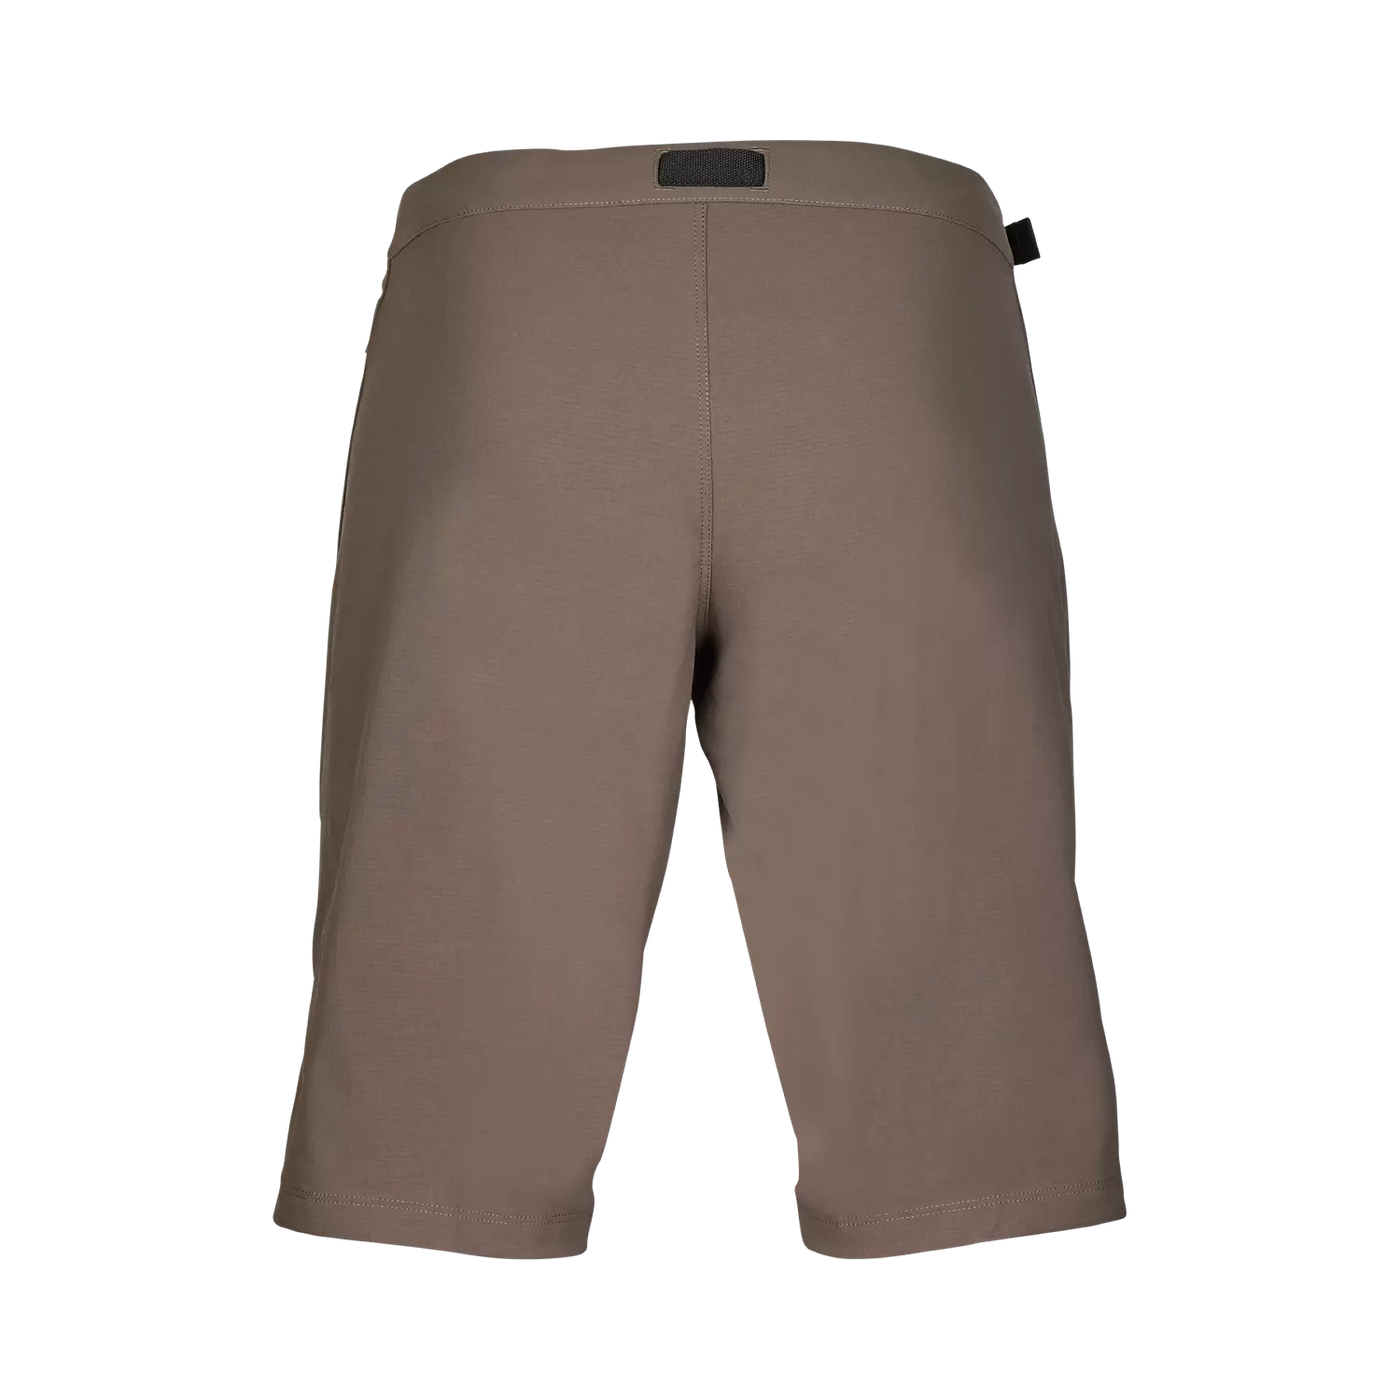 Ranger Lined Shorts (Women's)